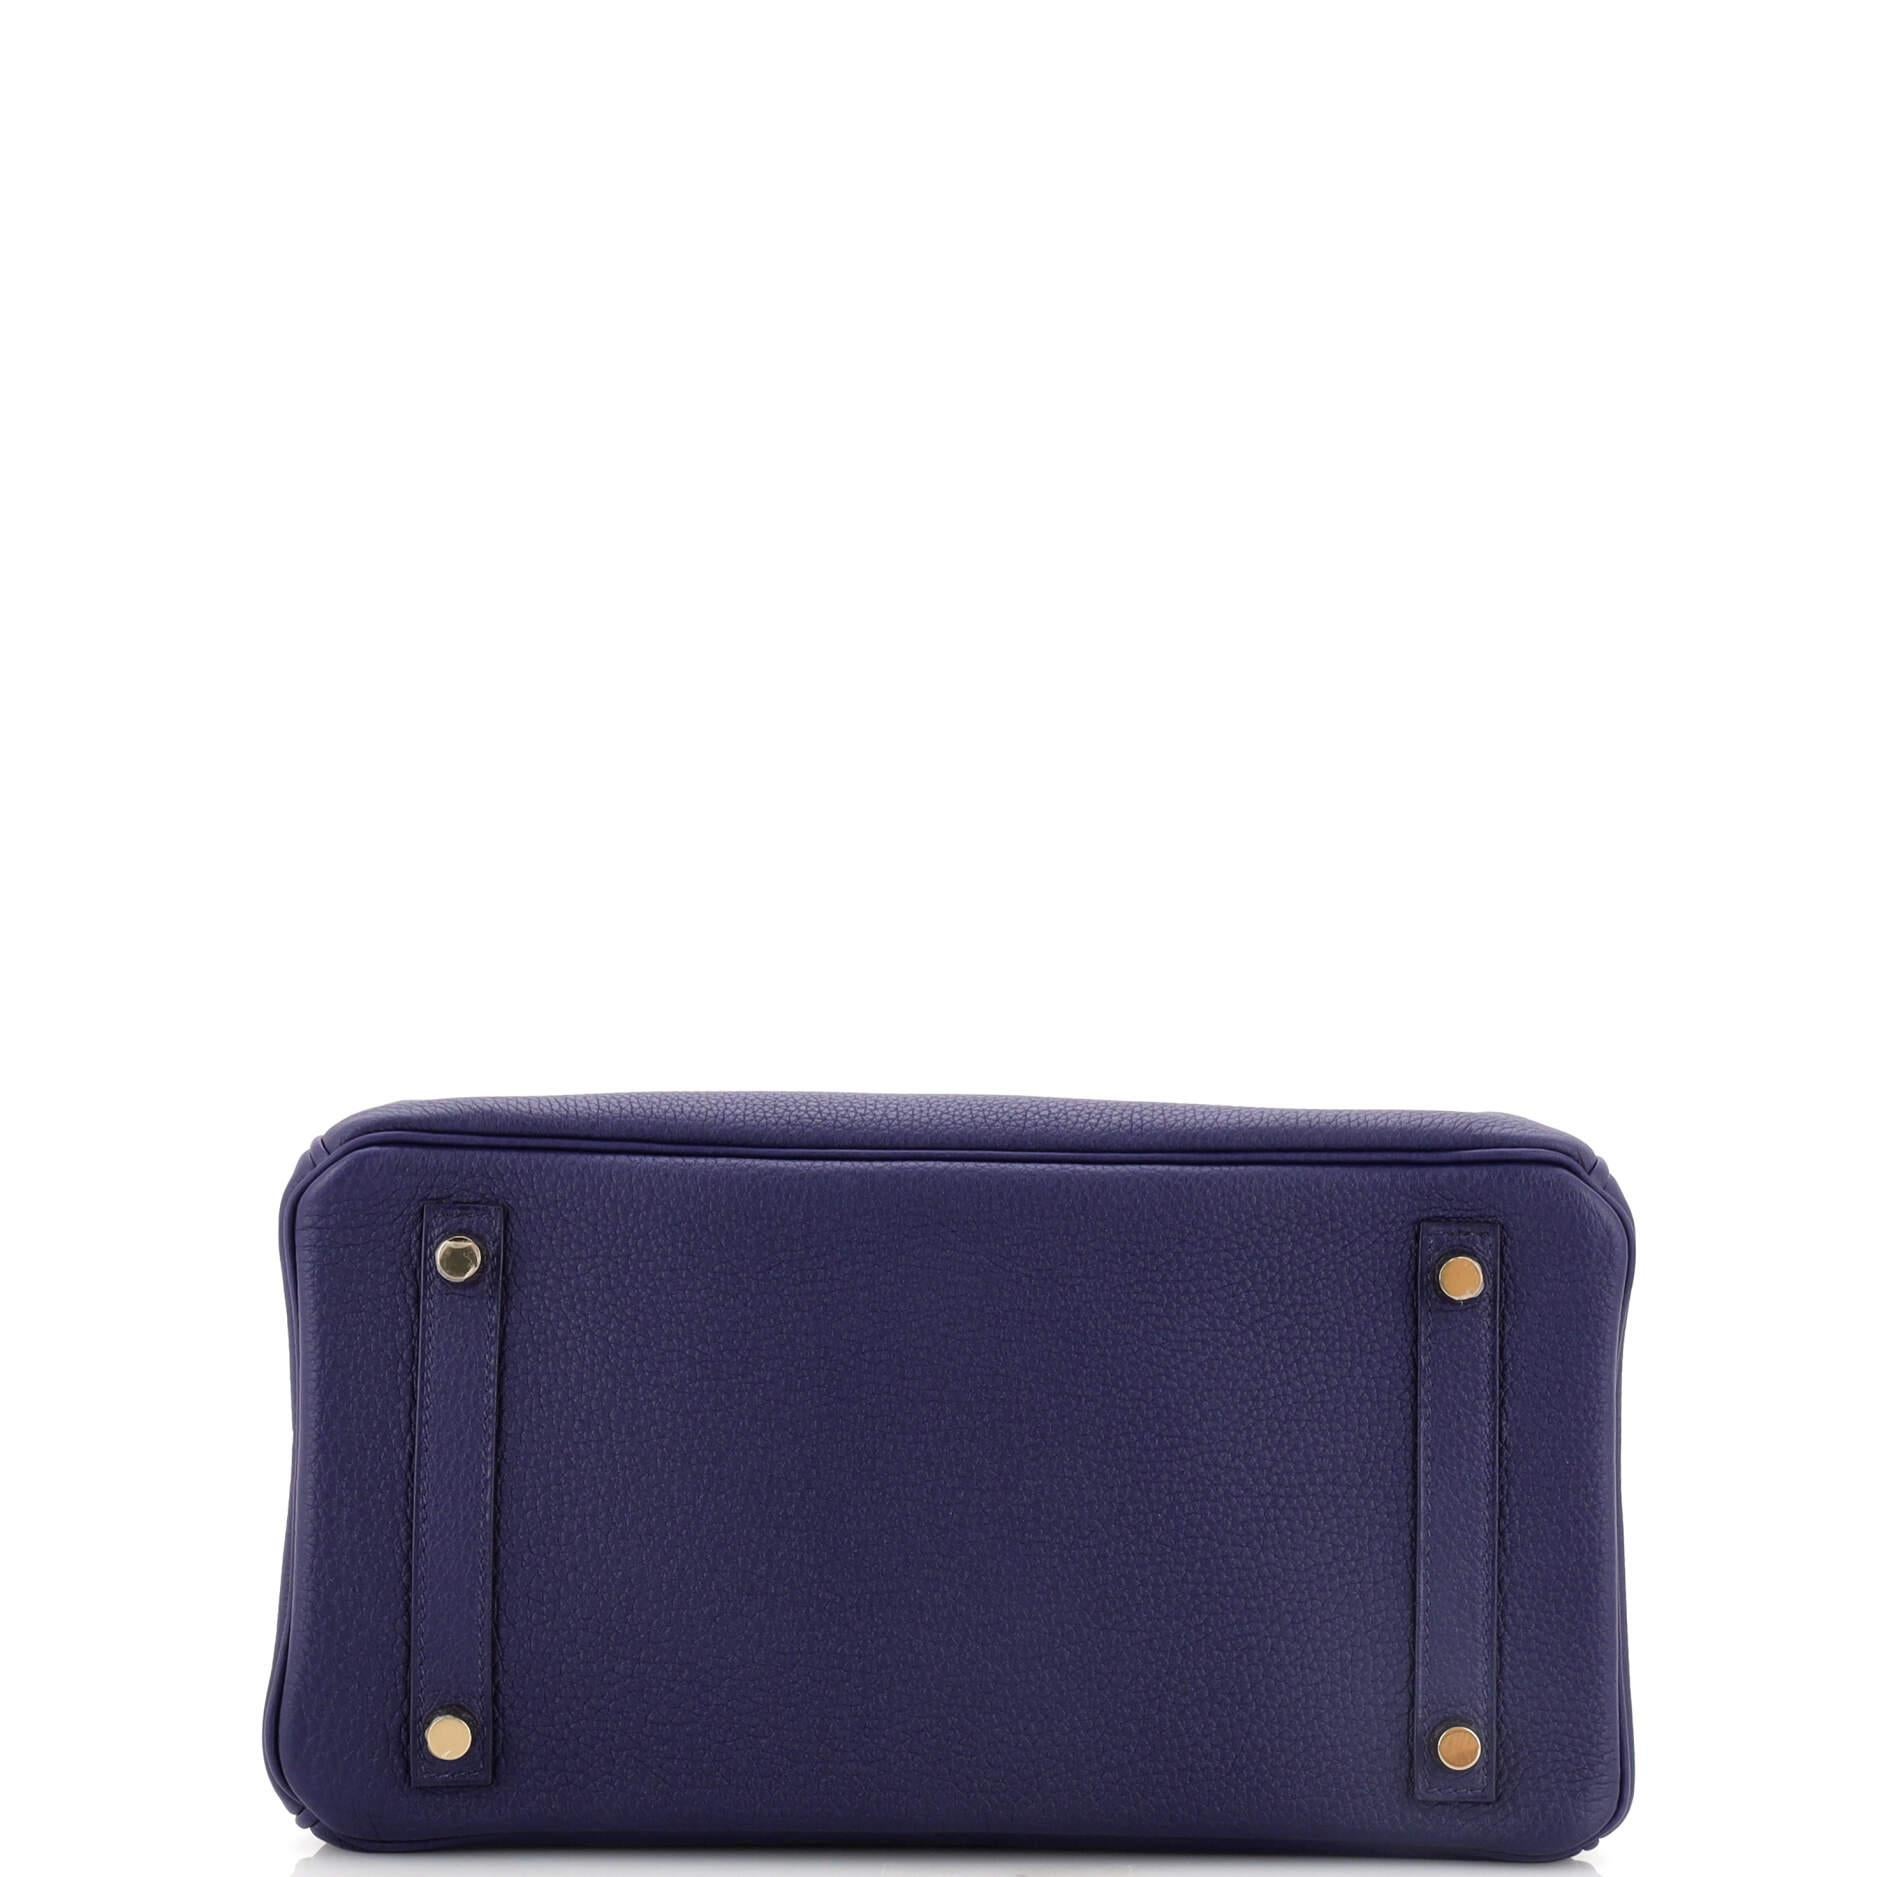 Hermes Birkin Handbag Bleu Encre Togo with Gold Hardware 30 For Sale 1